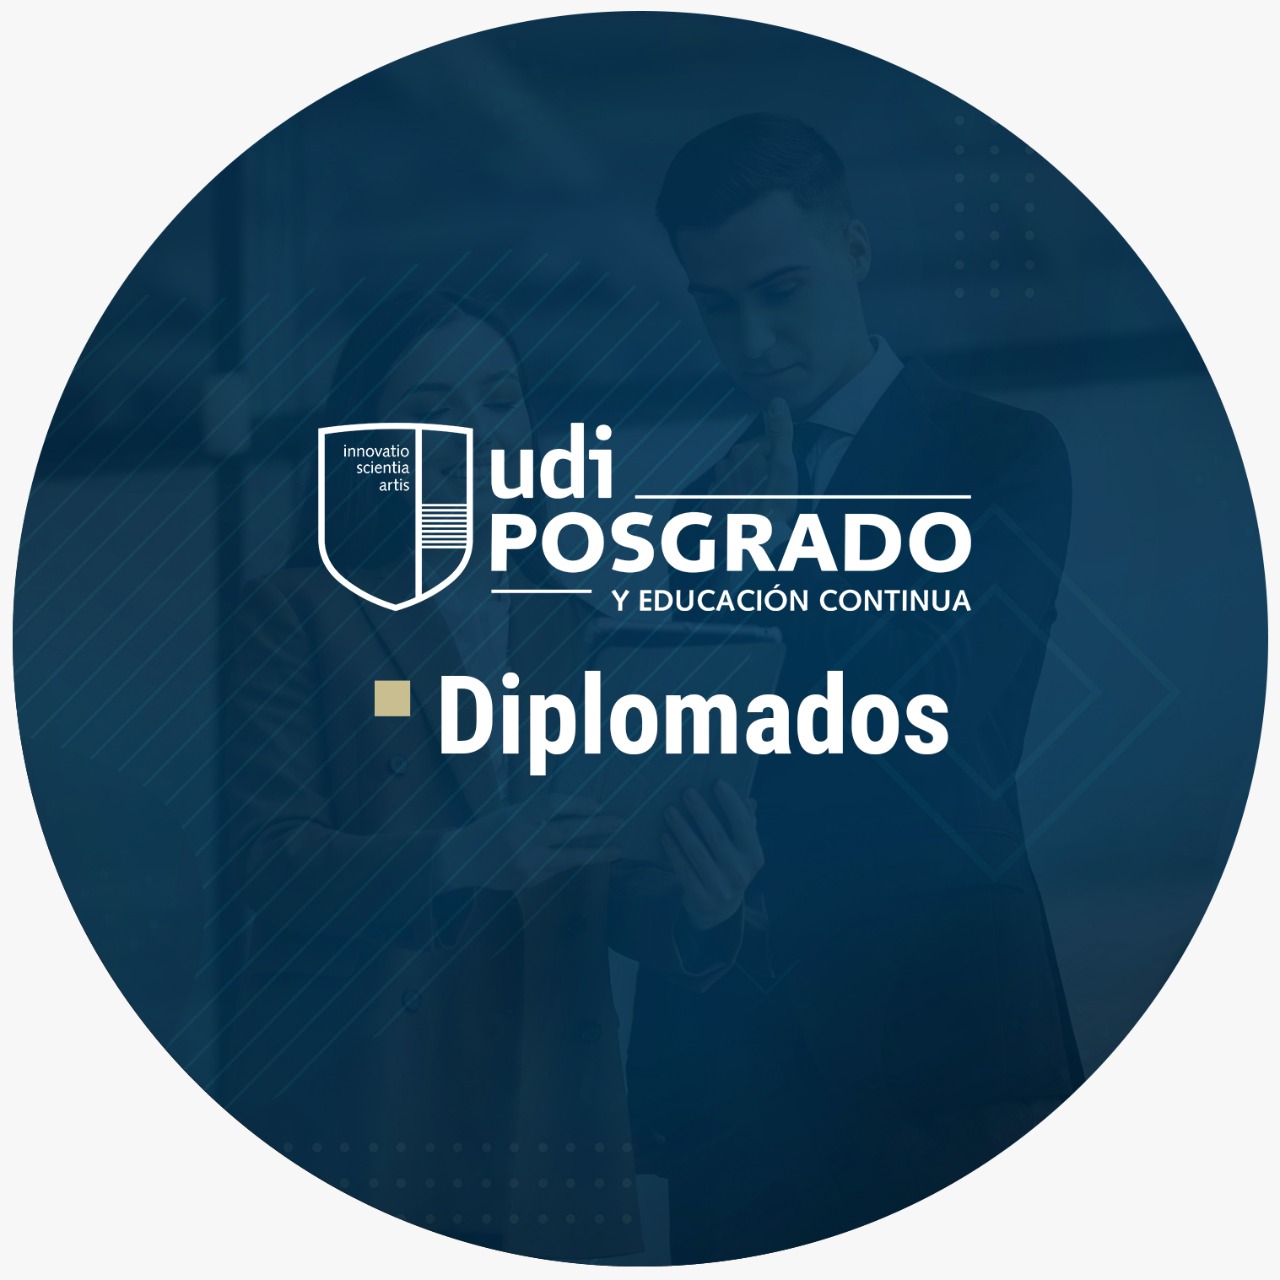 UDI - Educación continua y posgrado - Diplomados